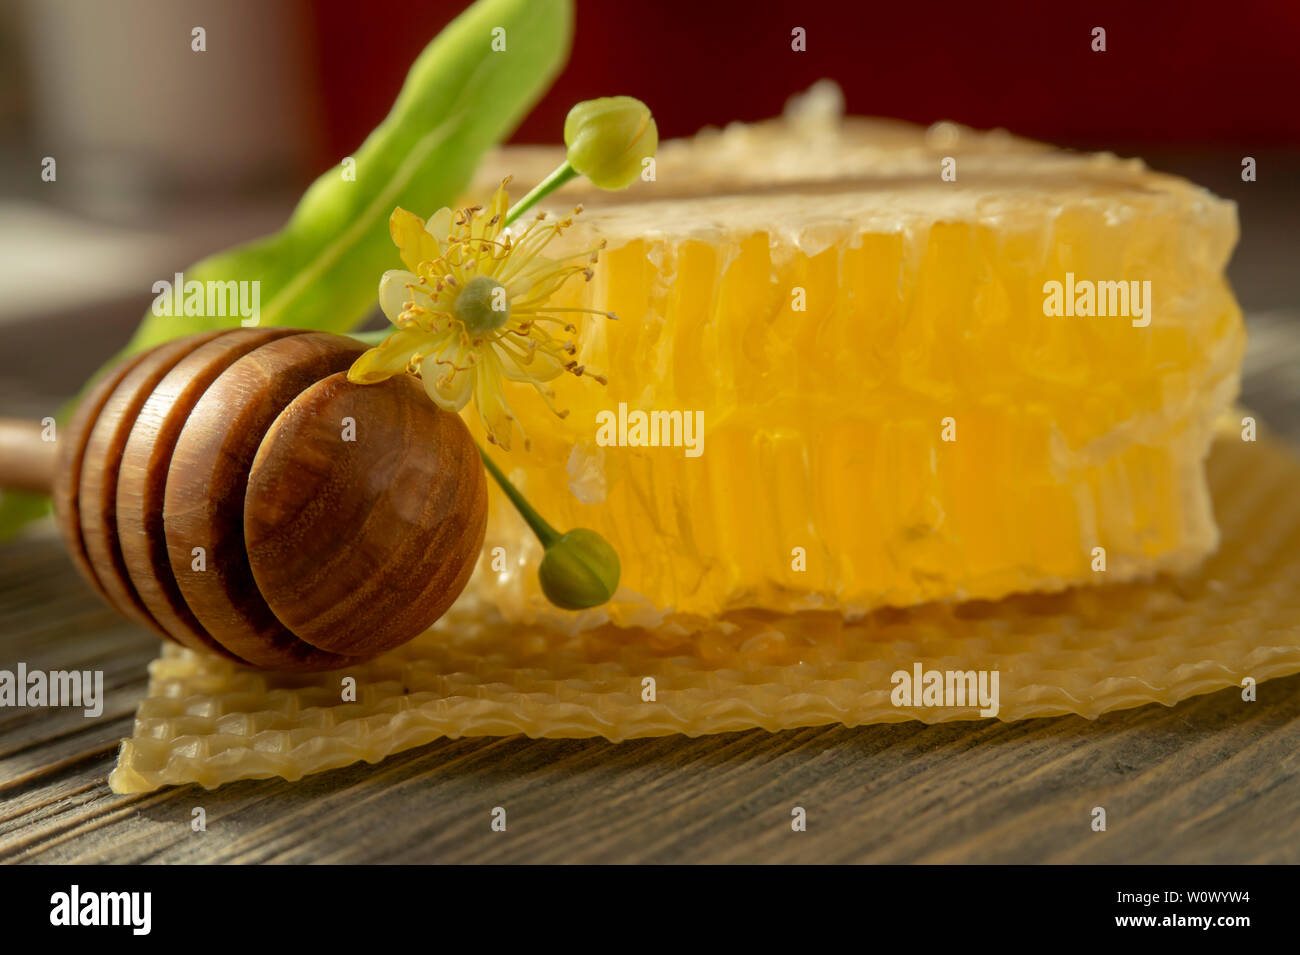 Bloc de miel en rayon avec fleur et ustensile en bois pour distribuer le miel dans un angle faible vue en gros dans l'ombre Banque D'Images